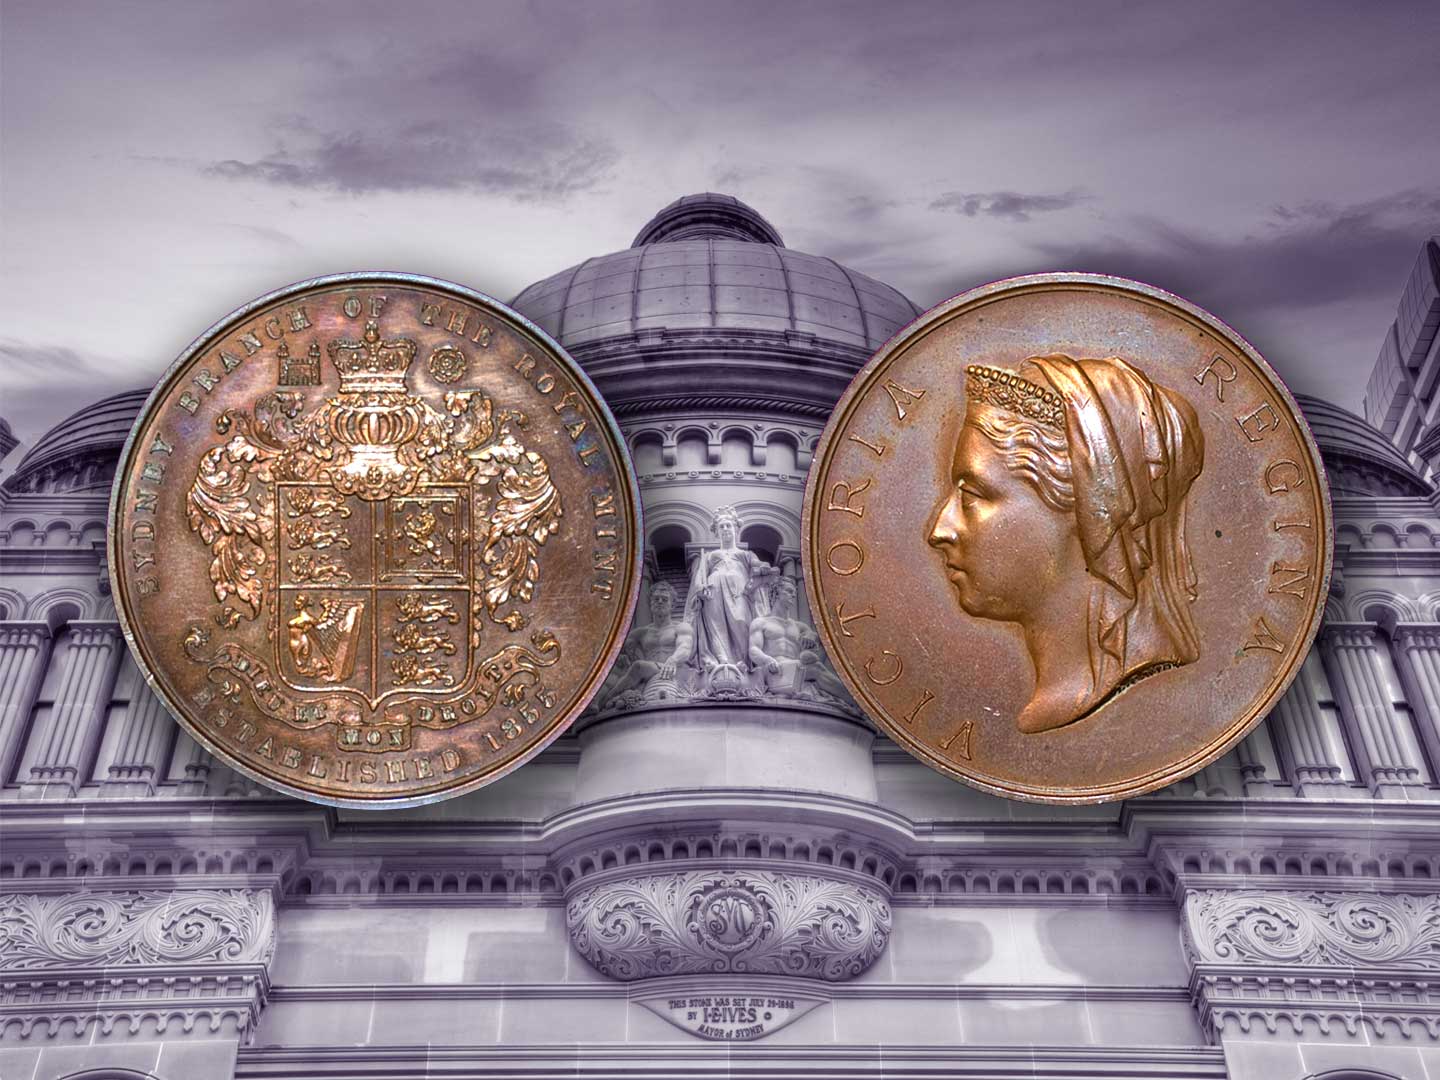 Sydney Mint Medallion   1440 x 1080